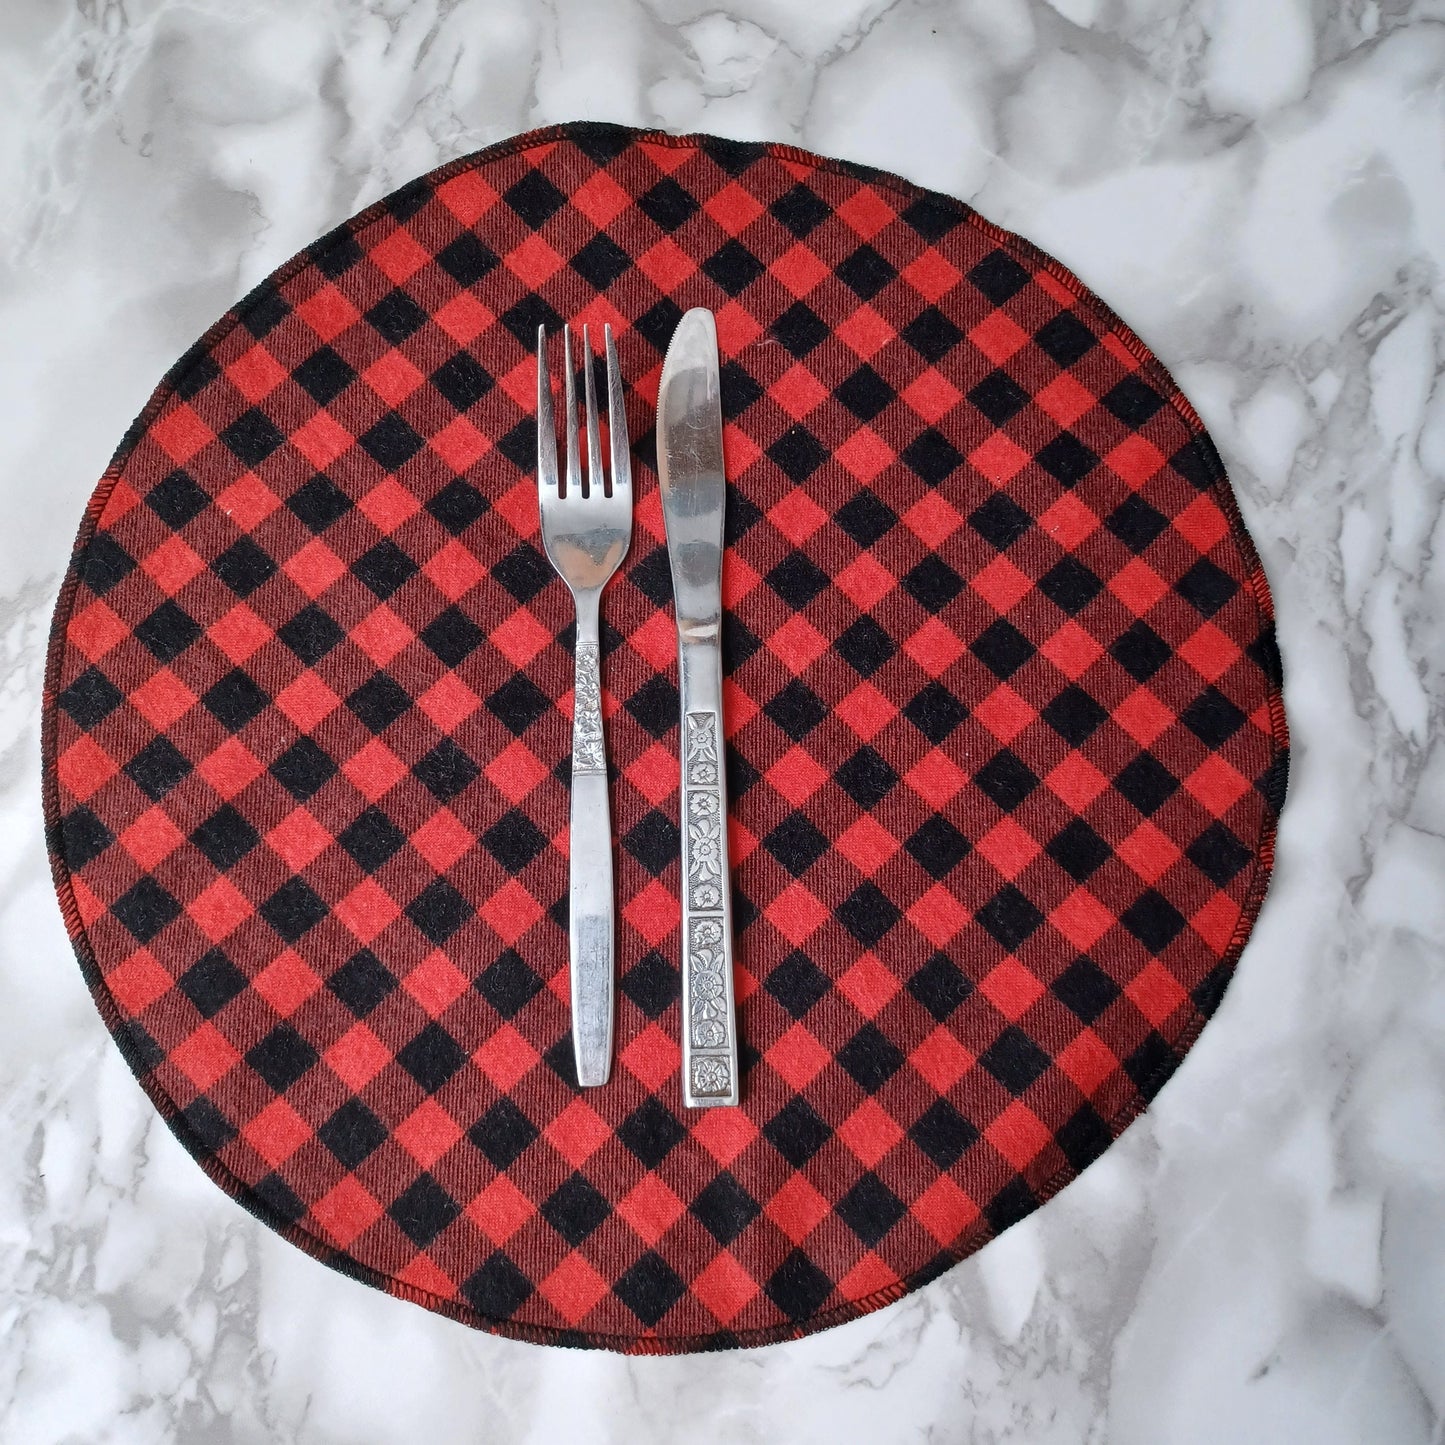 Serviettes de table et Essuie-tout-Petits carreaux noirs et rouges/Napkins and Paperless towels-Small black and red checks